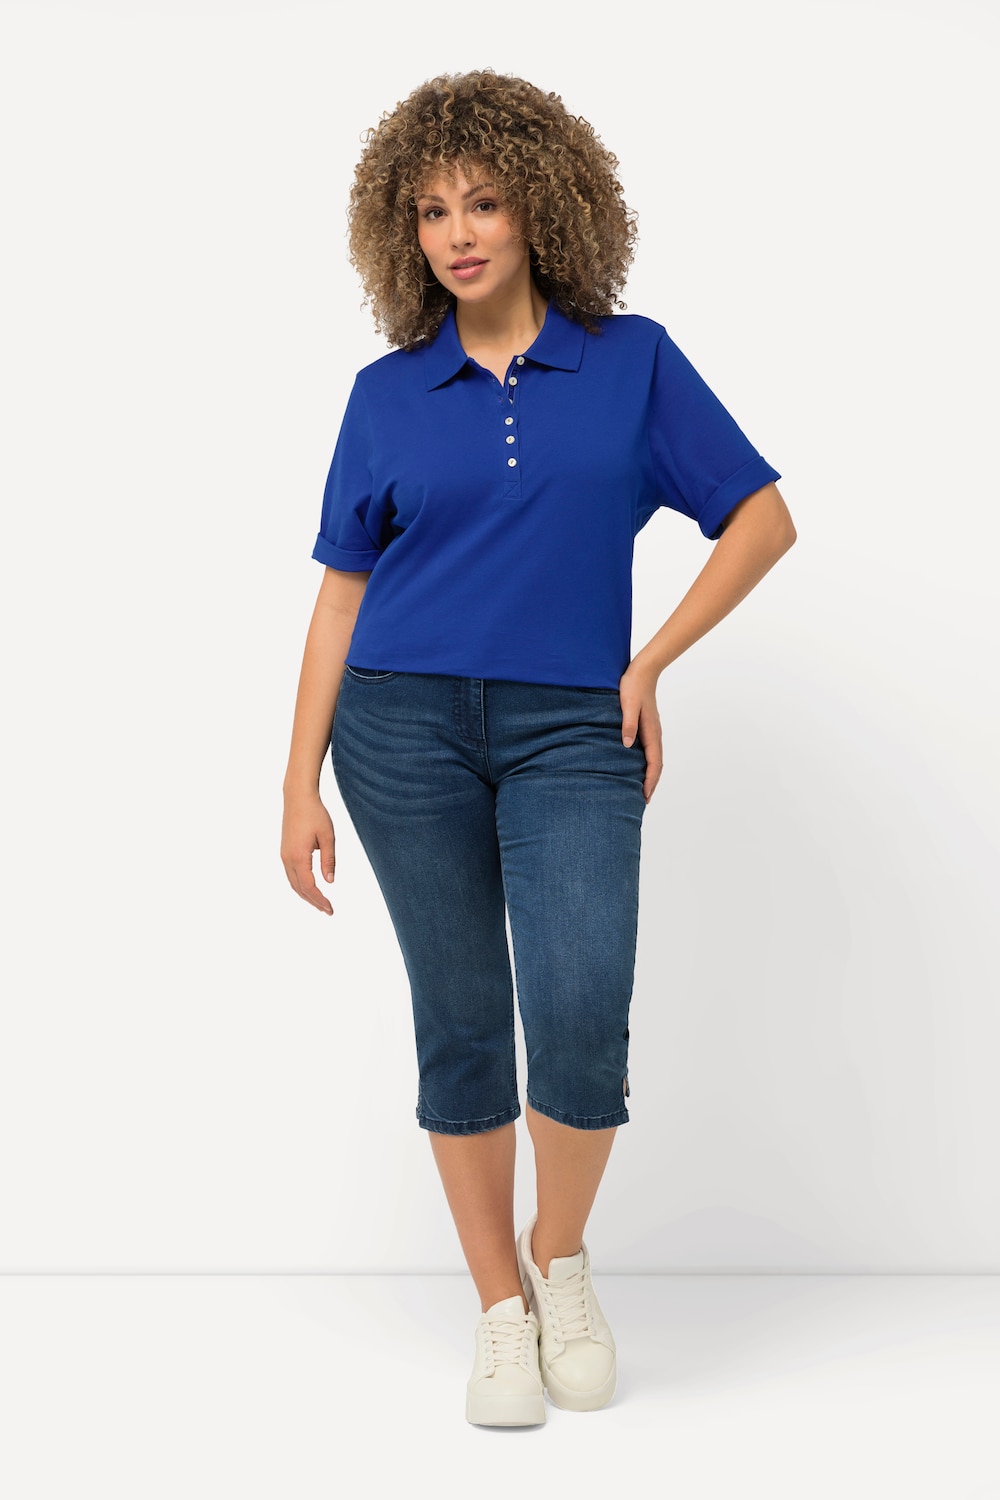 Grote Maten capri-jeans Sarah, Dames, blauw, Maat: 48, Katoen/Polyester/Viscose, Ulla Popken